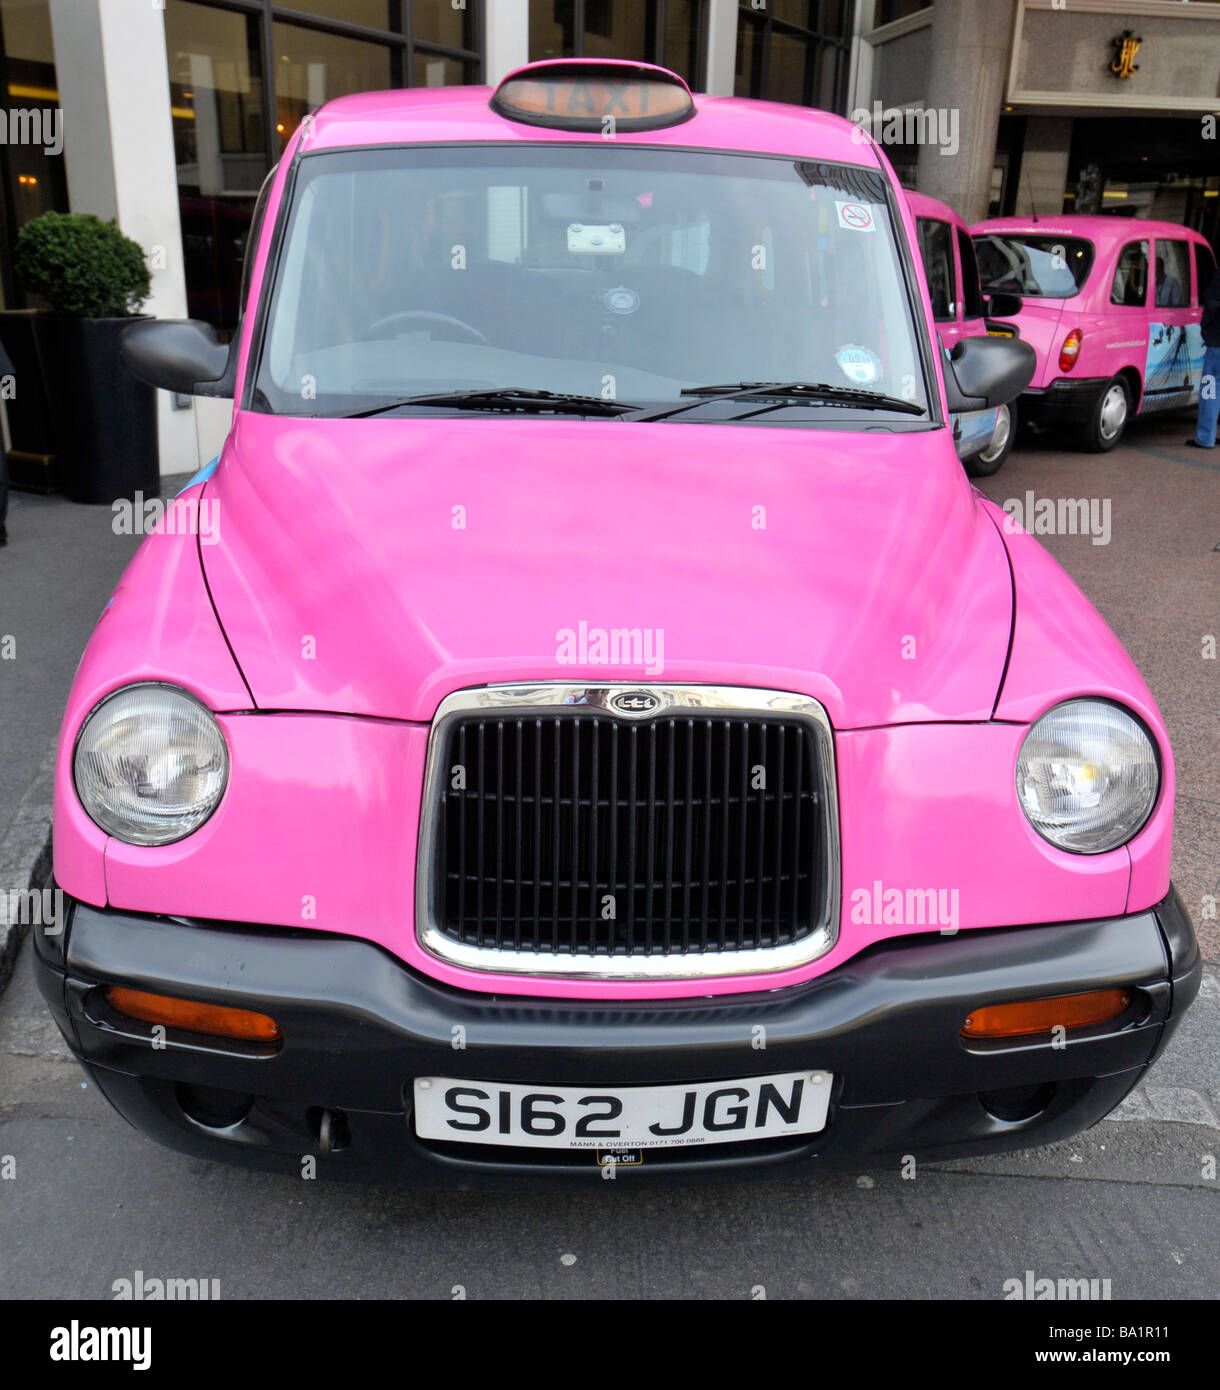 Pink taxi de Londres Foto de stock